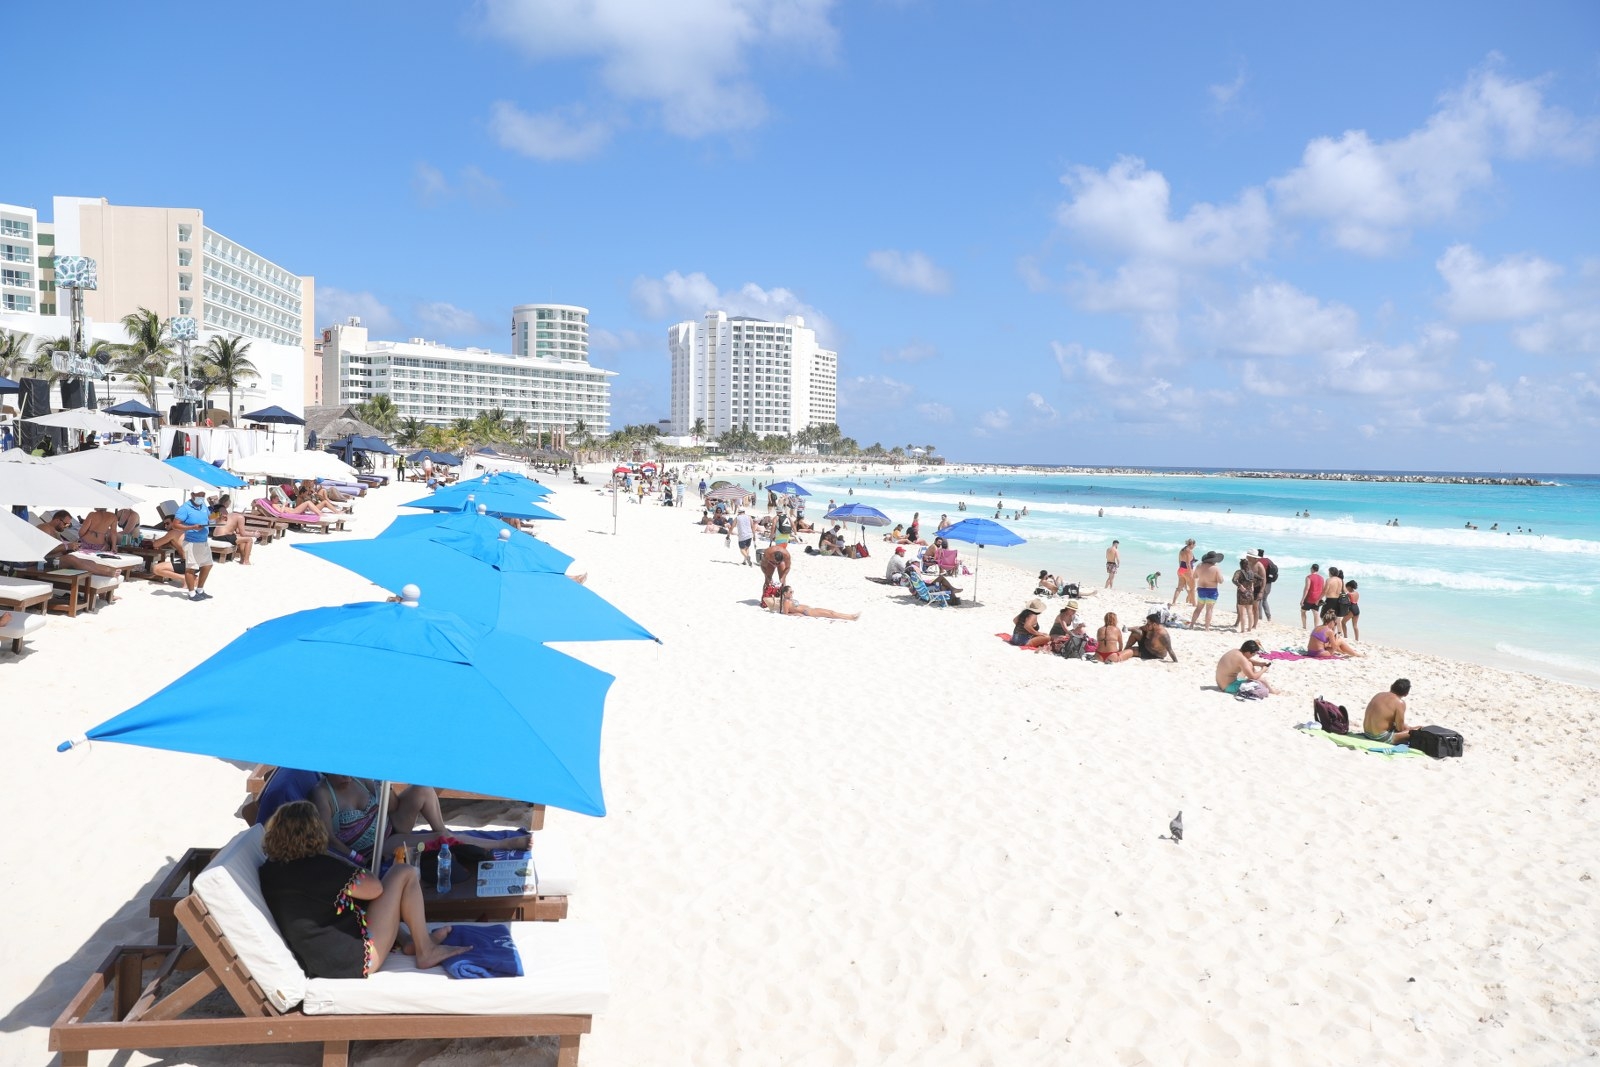 Clima en Cancún: Se espera altas temperaturas y probabilidad de lluvia en la tarde